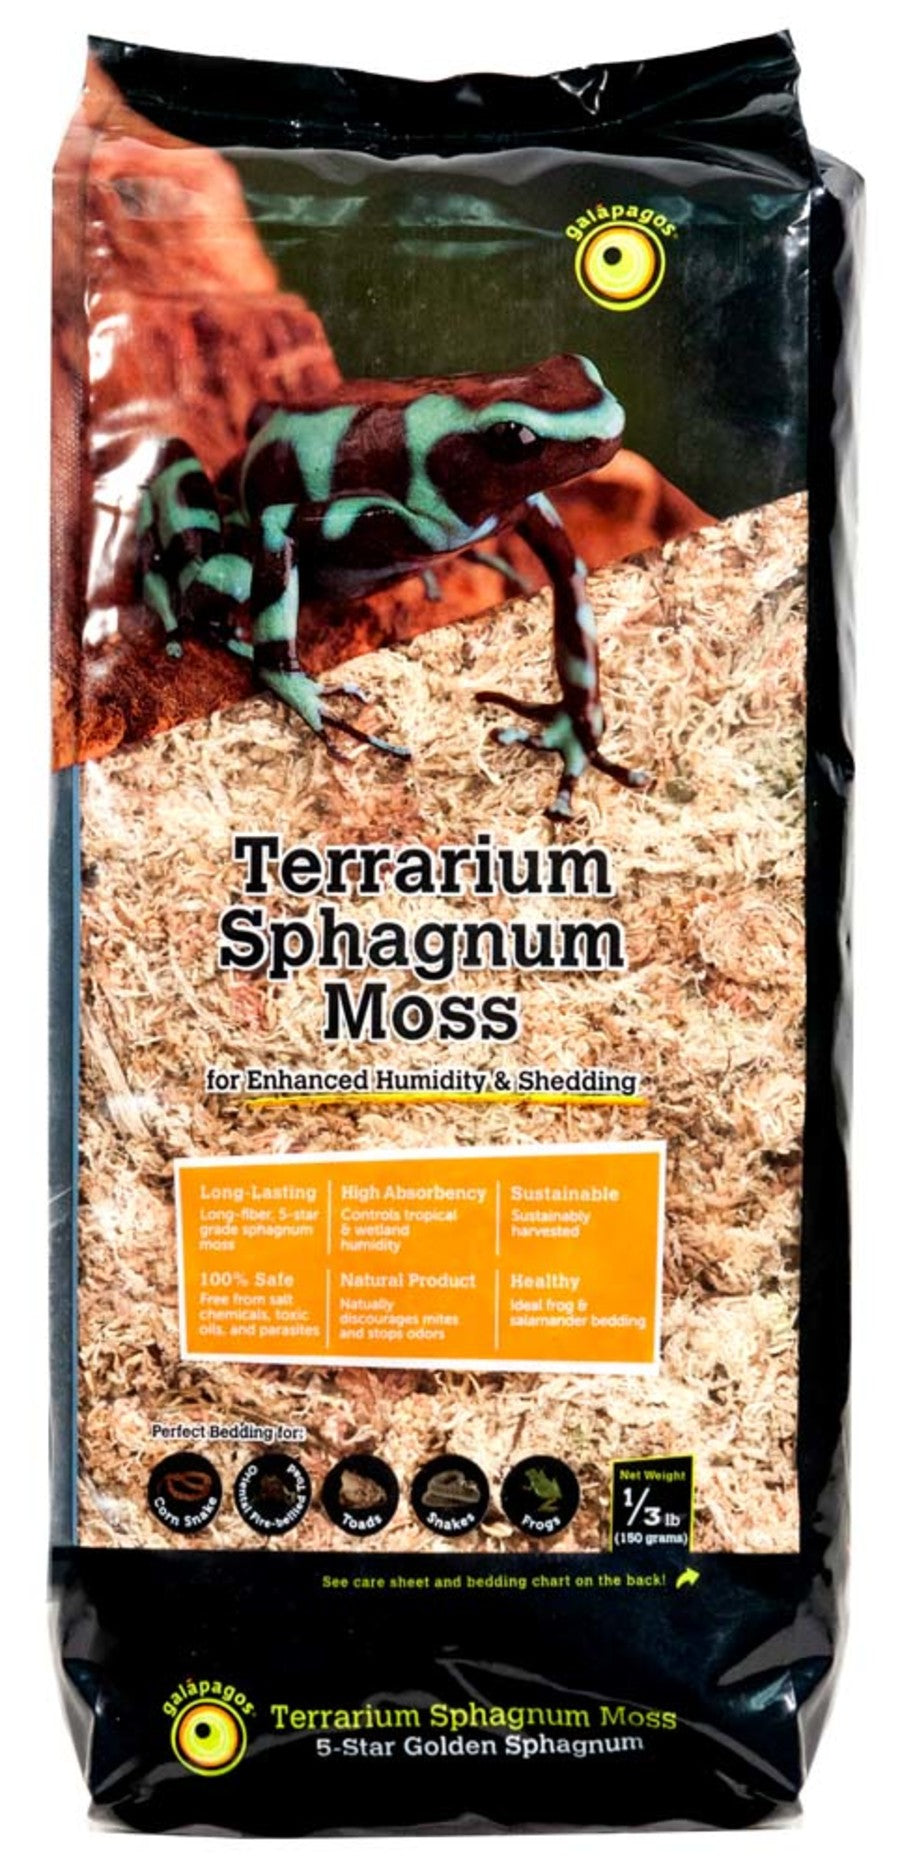 Galapagos Terrarium Sphagnum Moss